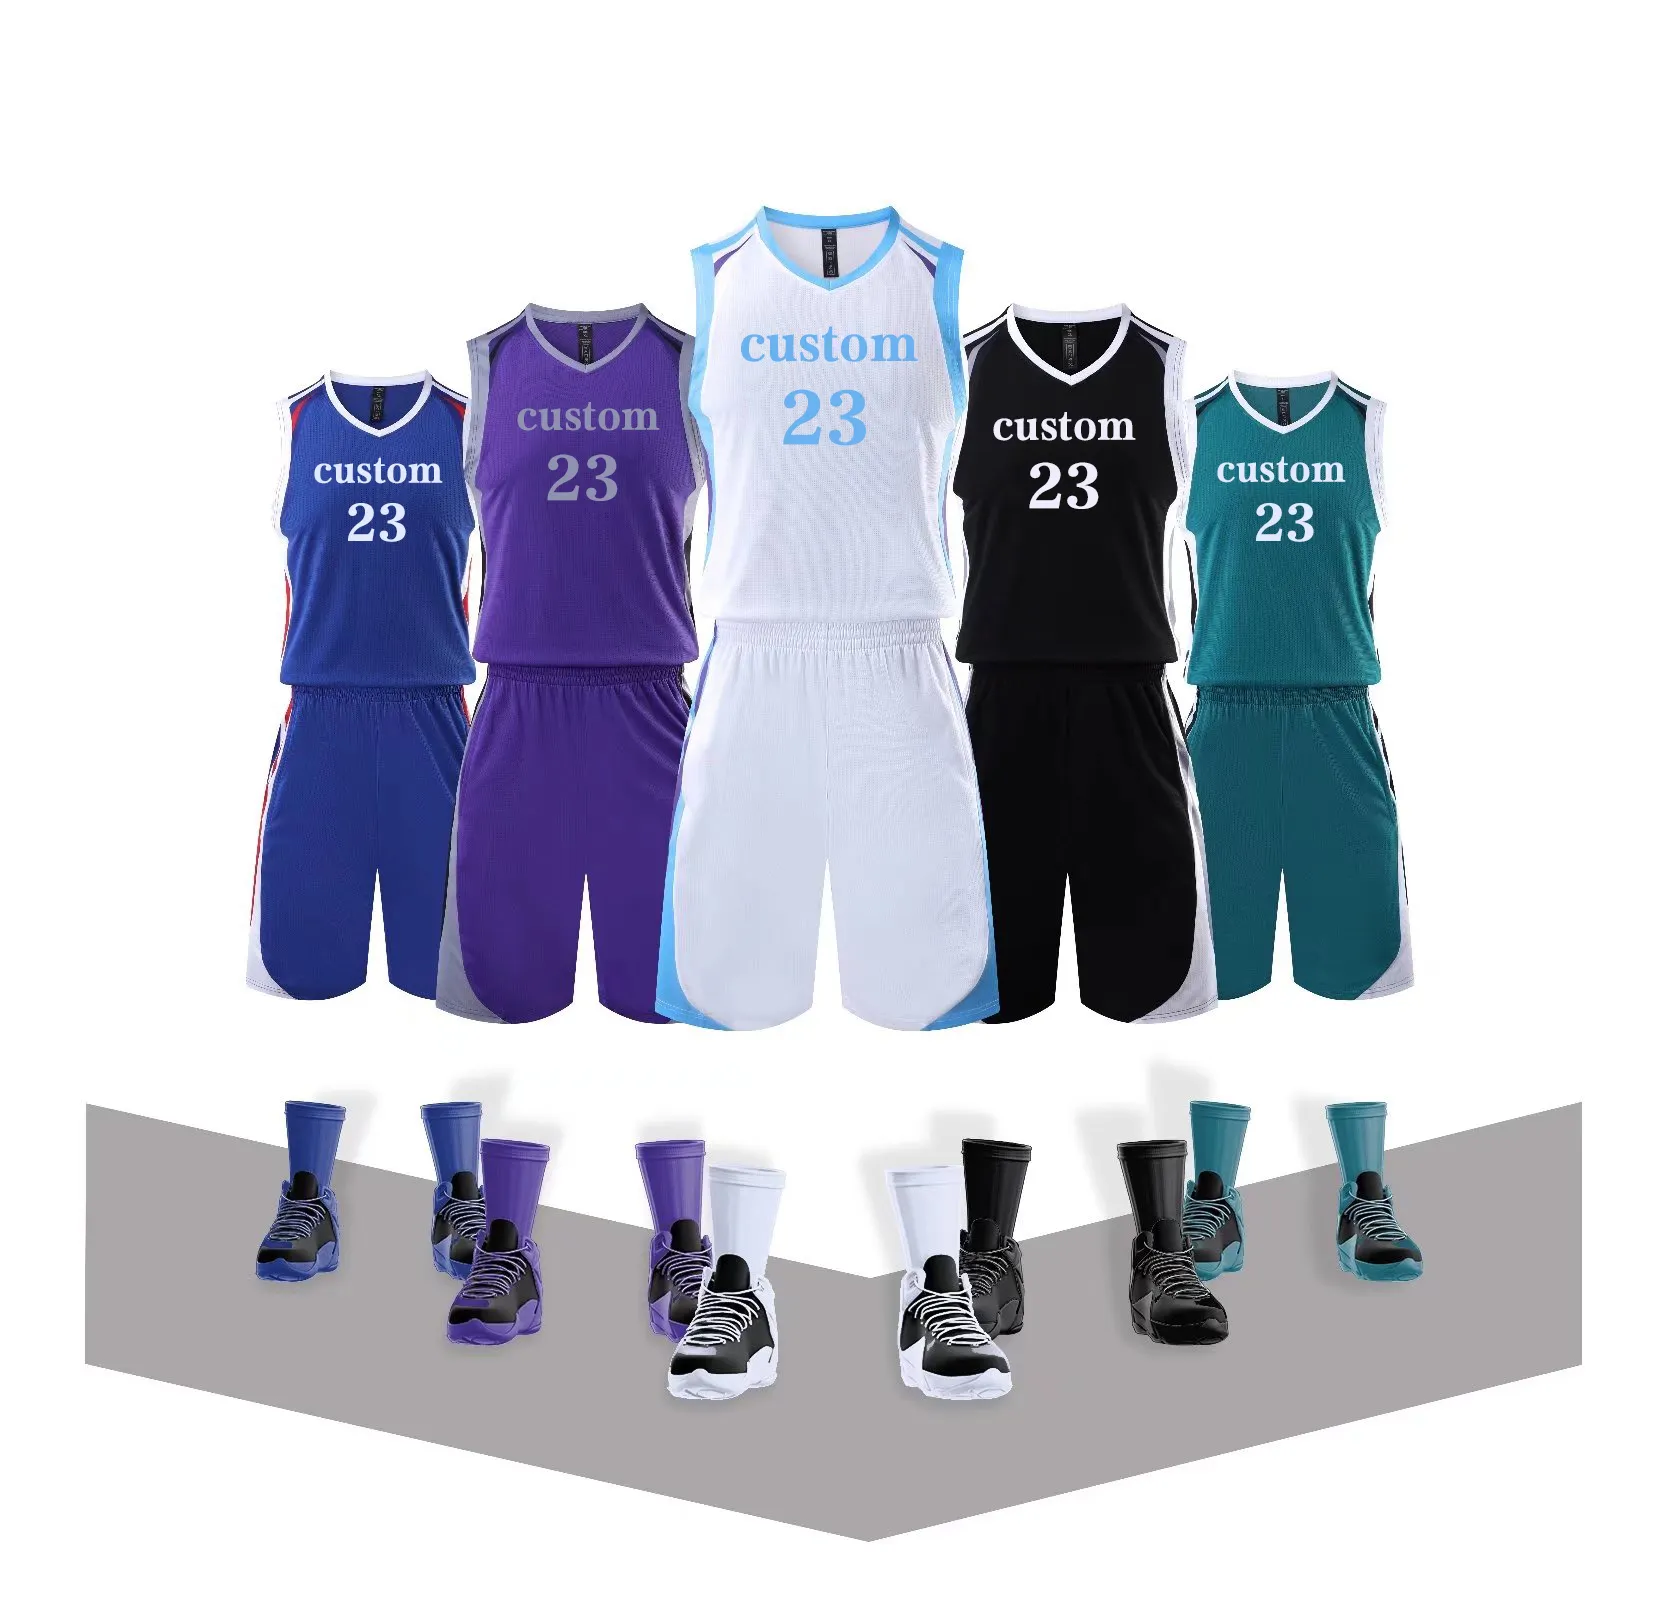 Meilleure vente du fabricant, nouveau modèle d'uniforme de maillot de basket-ball avec broderie par Sublimation